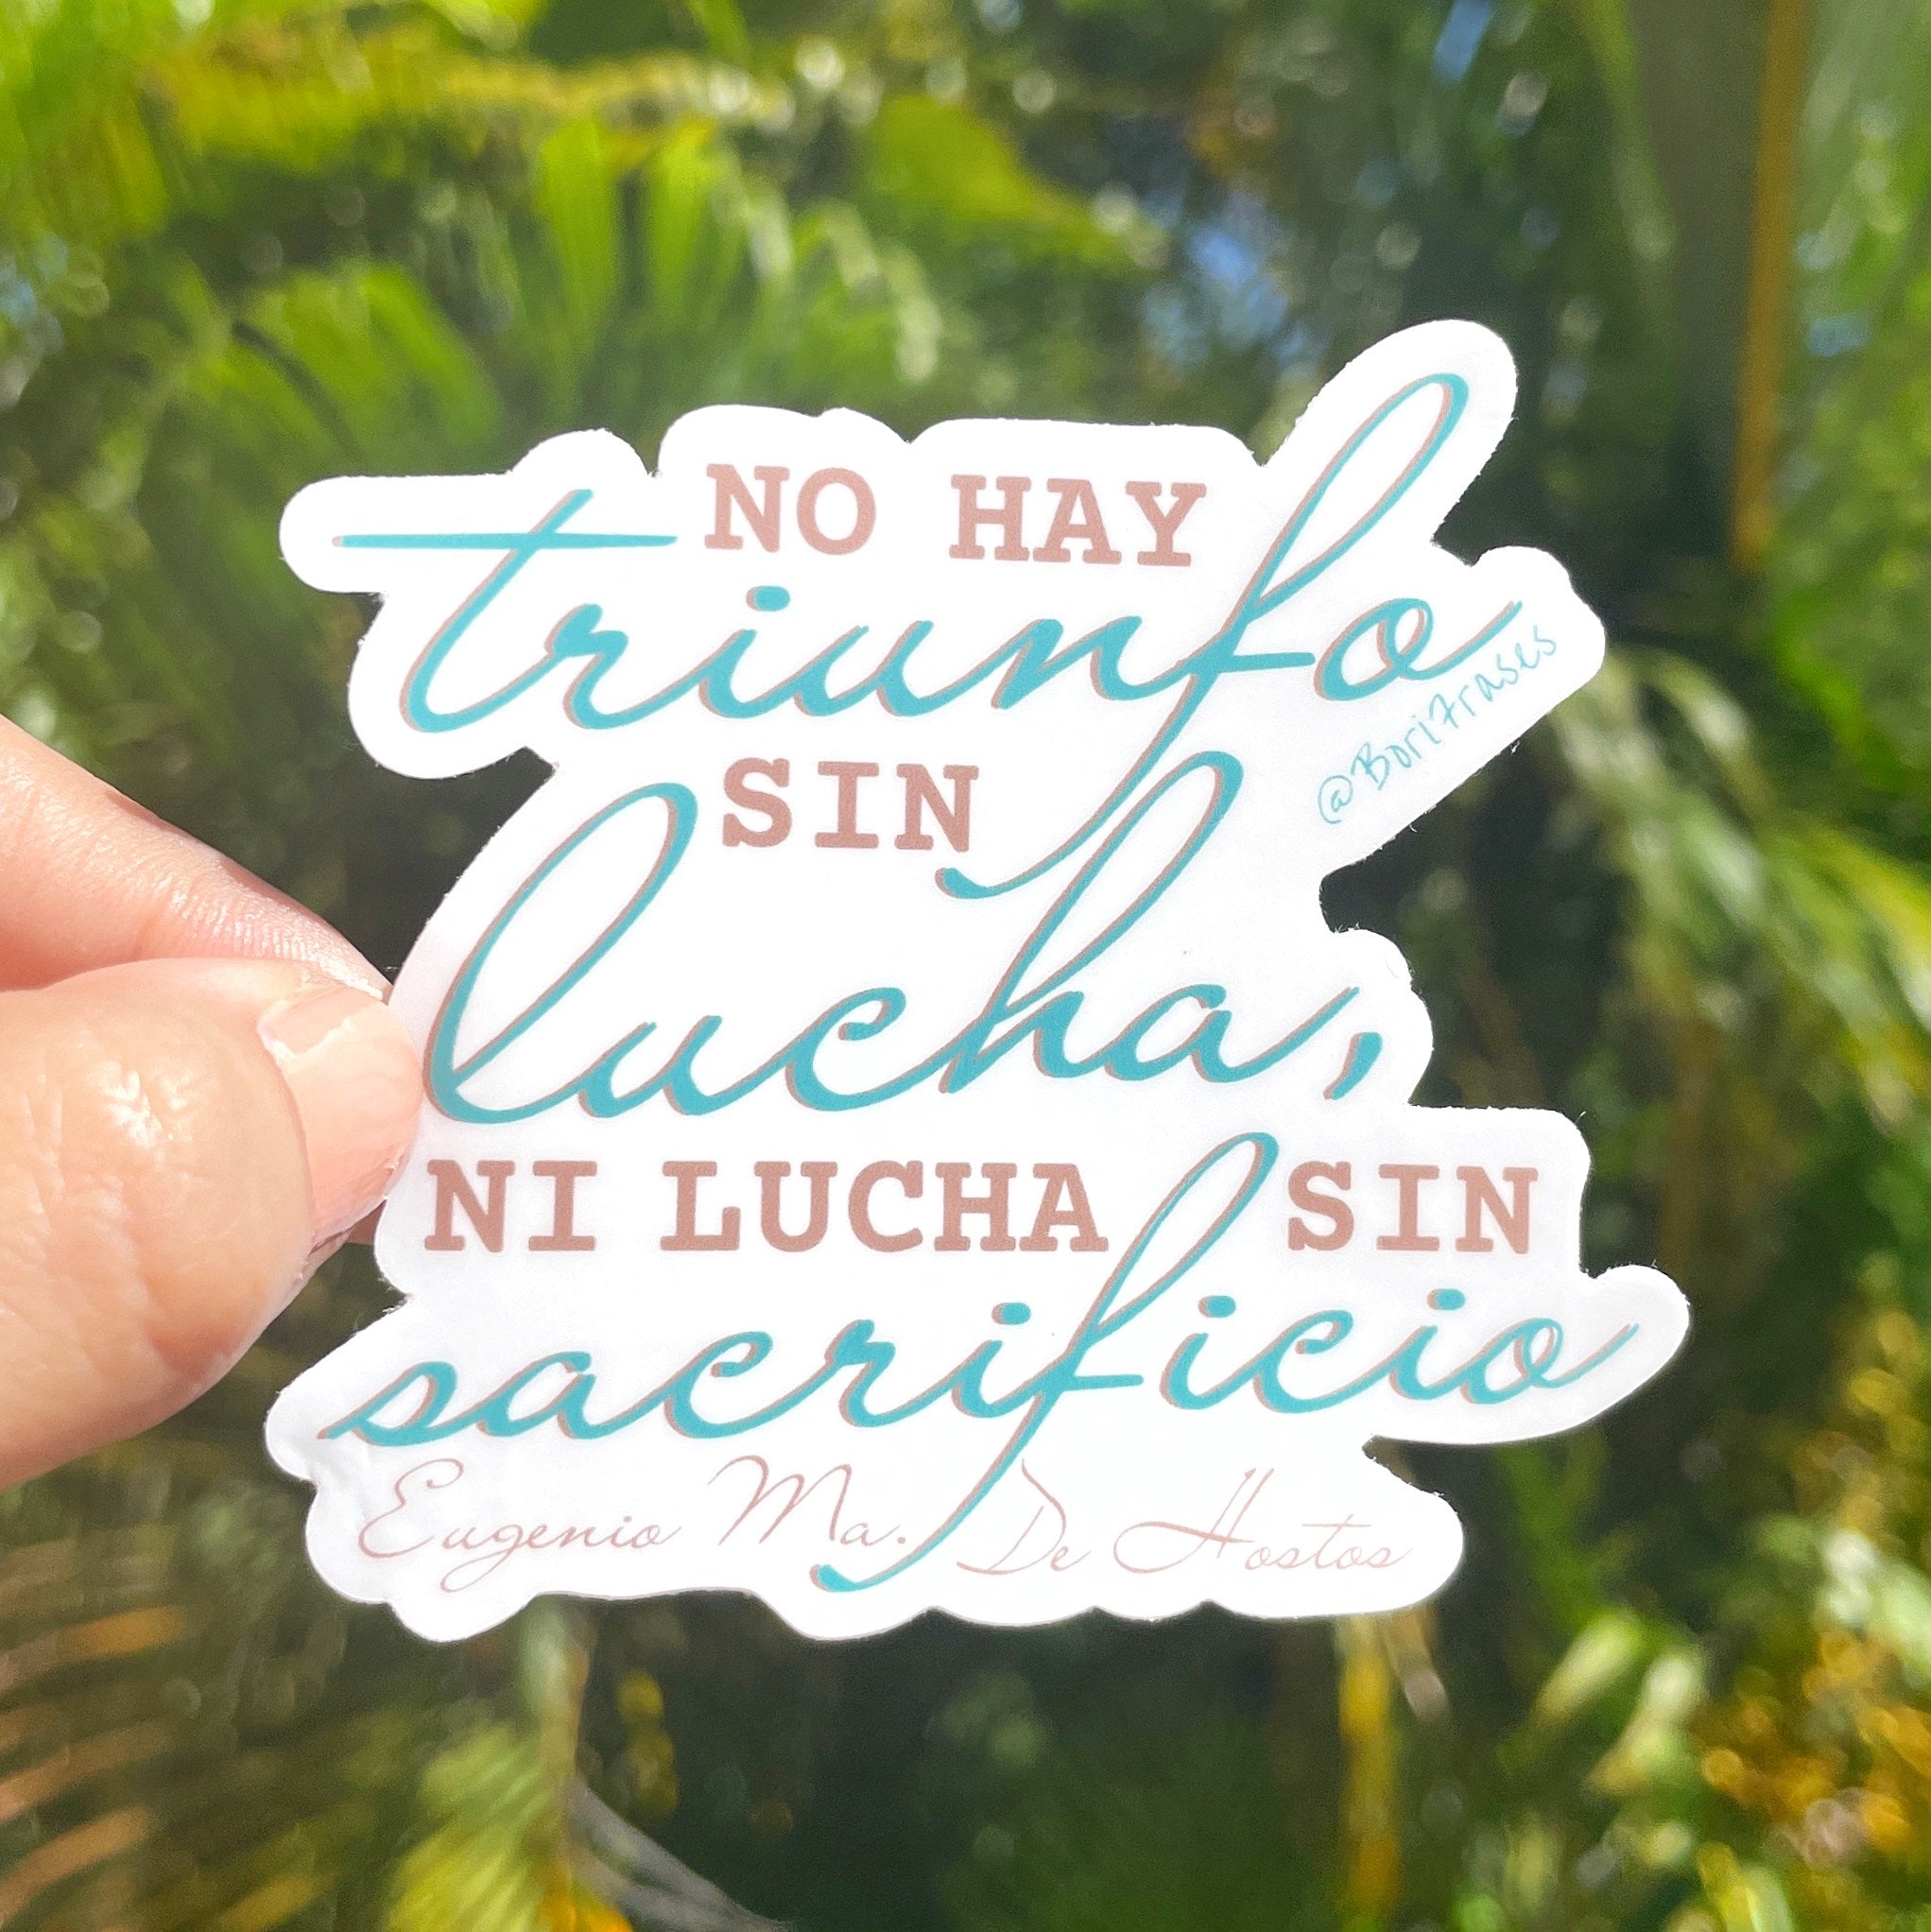 Sticker boricua con frase de Eugenio Maria De Hostos, procer de Puerto Rico